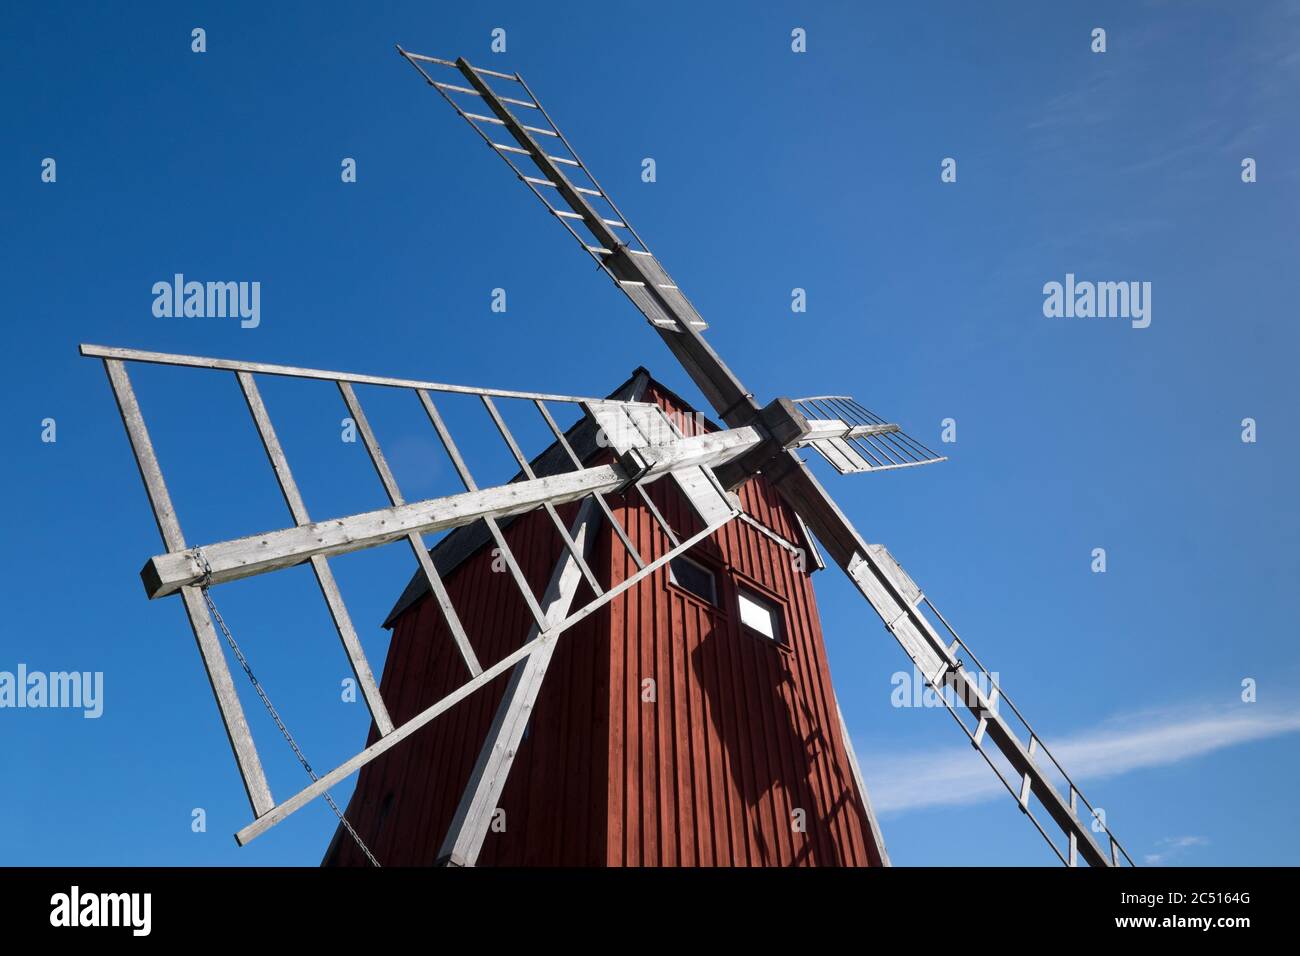 Detail der traditionellen alten Holzwindmühle, das Symbol für die Insel Oland in Schweden. Blauer Himmel Stockfoto